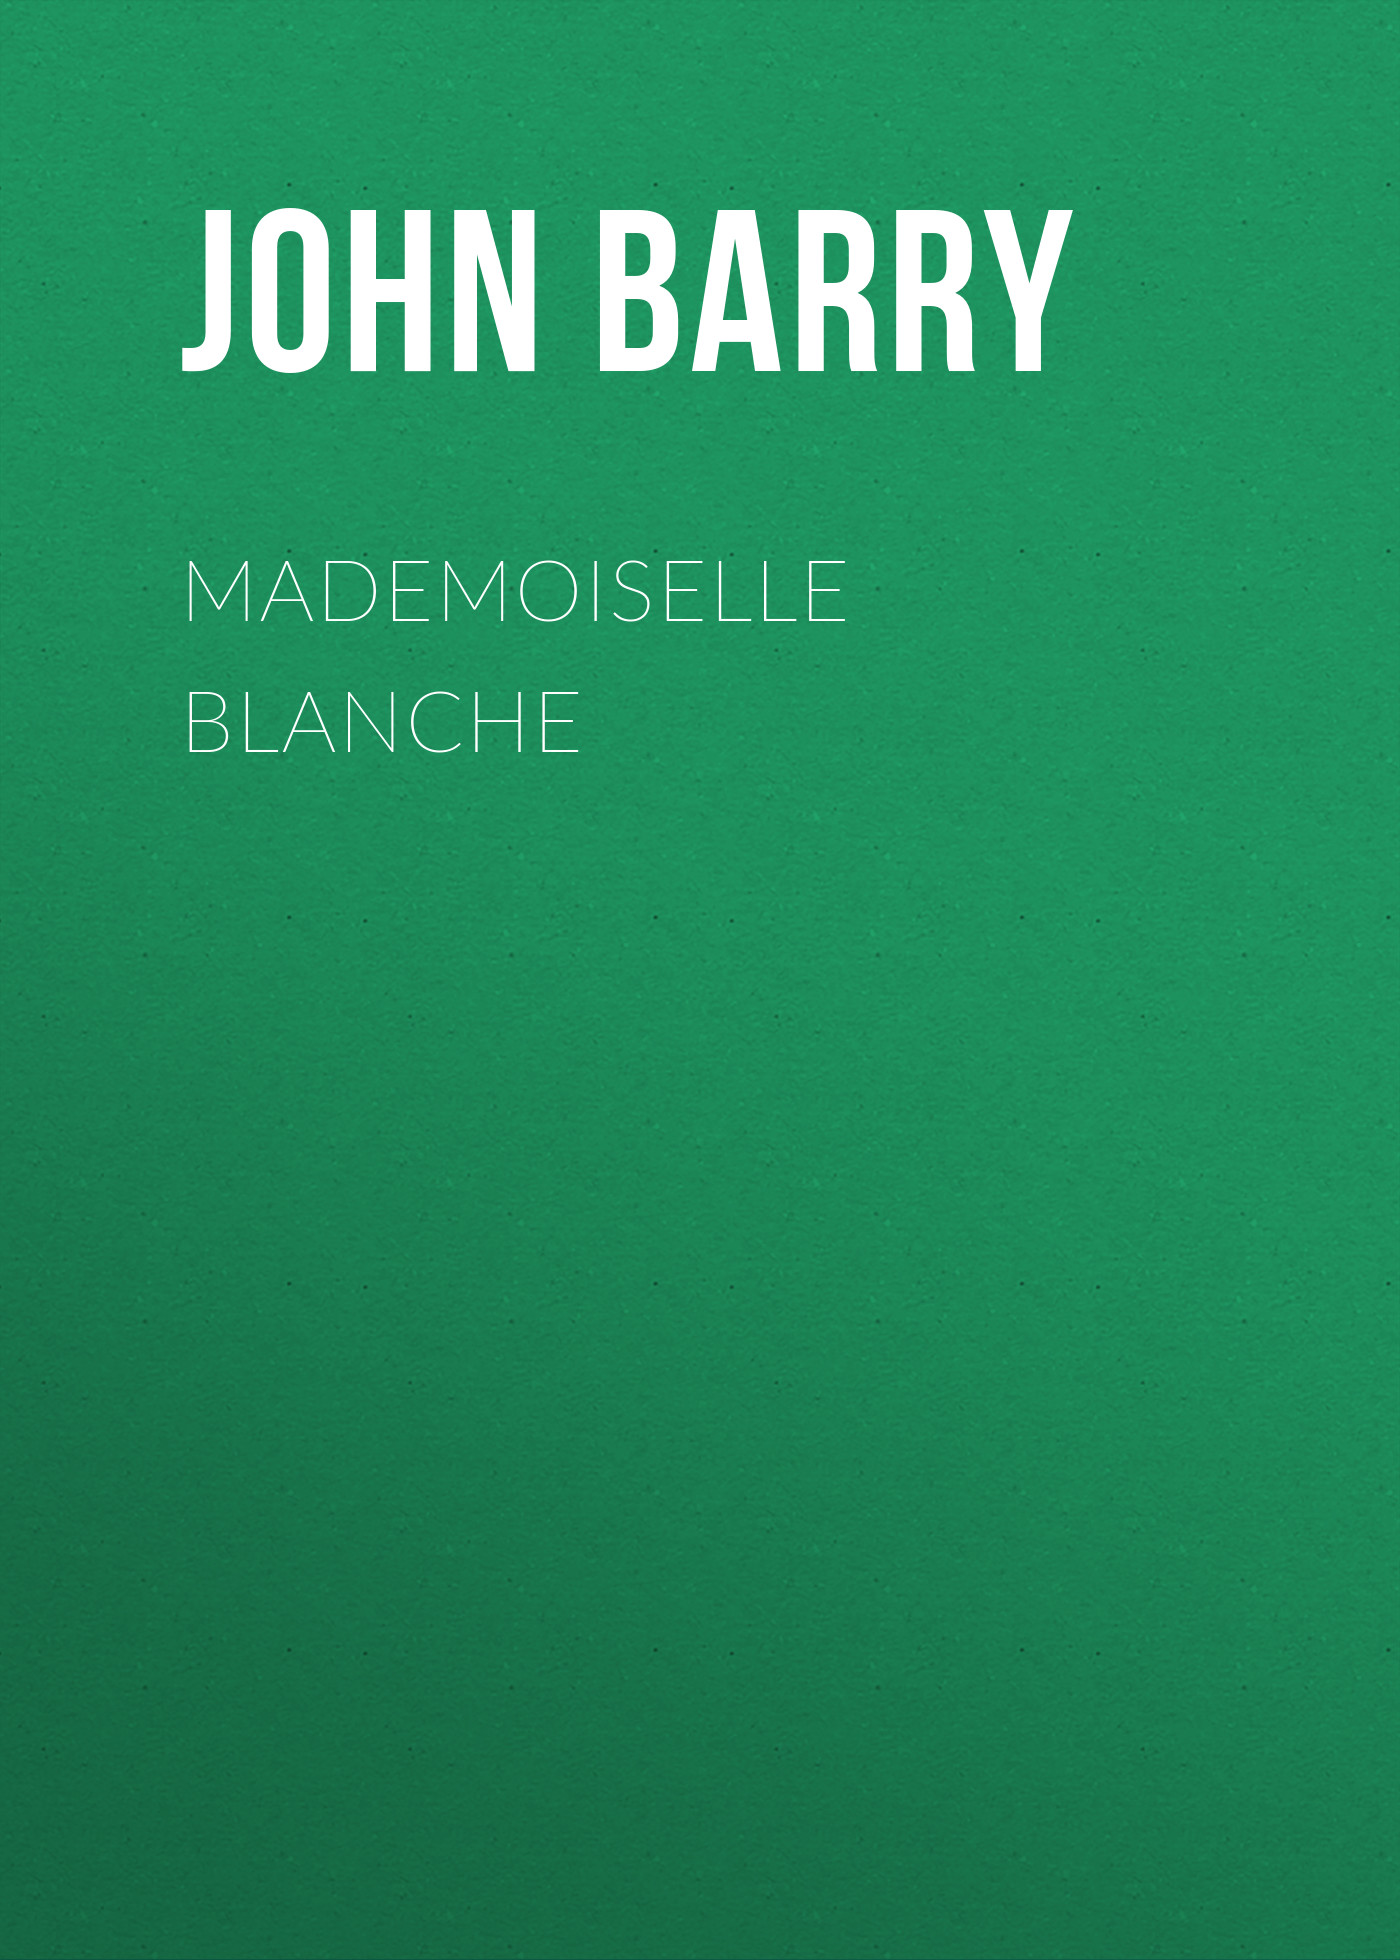 Книга Mademoiselle Blanche из серии , созданная John Barry, может относится к жанру Зарубежная старинная литература, Зарубежная классика. Стоимость электронной книги Mademoiselle Blanche с идентификатором 24173564 составляет 0.90 руб.